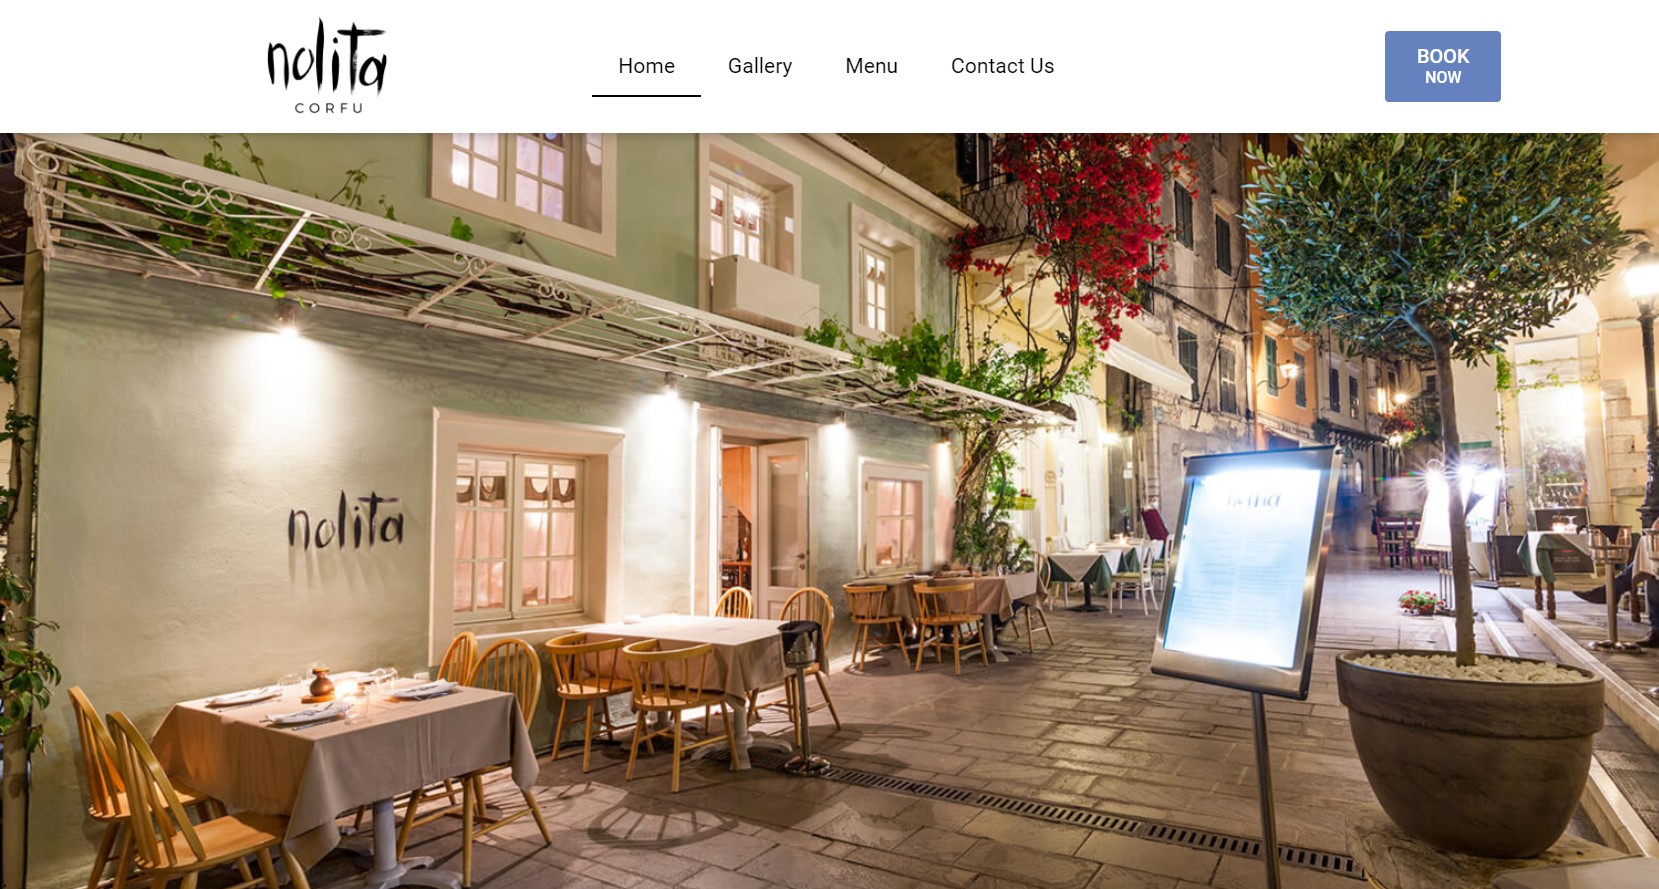 Κατασκευή Ιστοσελίδων Κέρκυρα - Nolita Restaurant Corfu Island cover image ιστοσελίδα Κέρκυρα